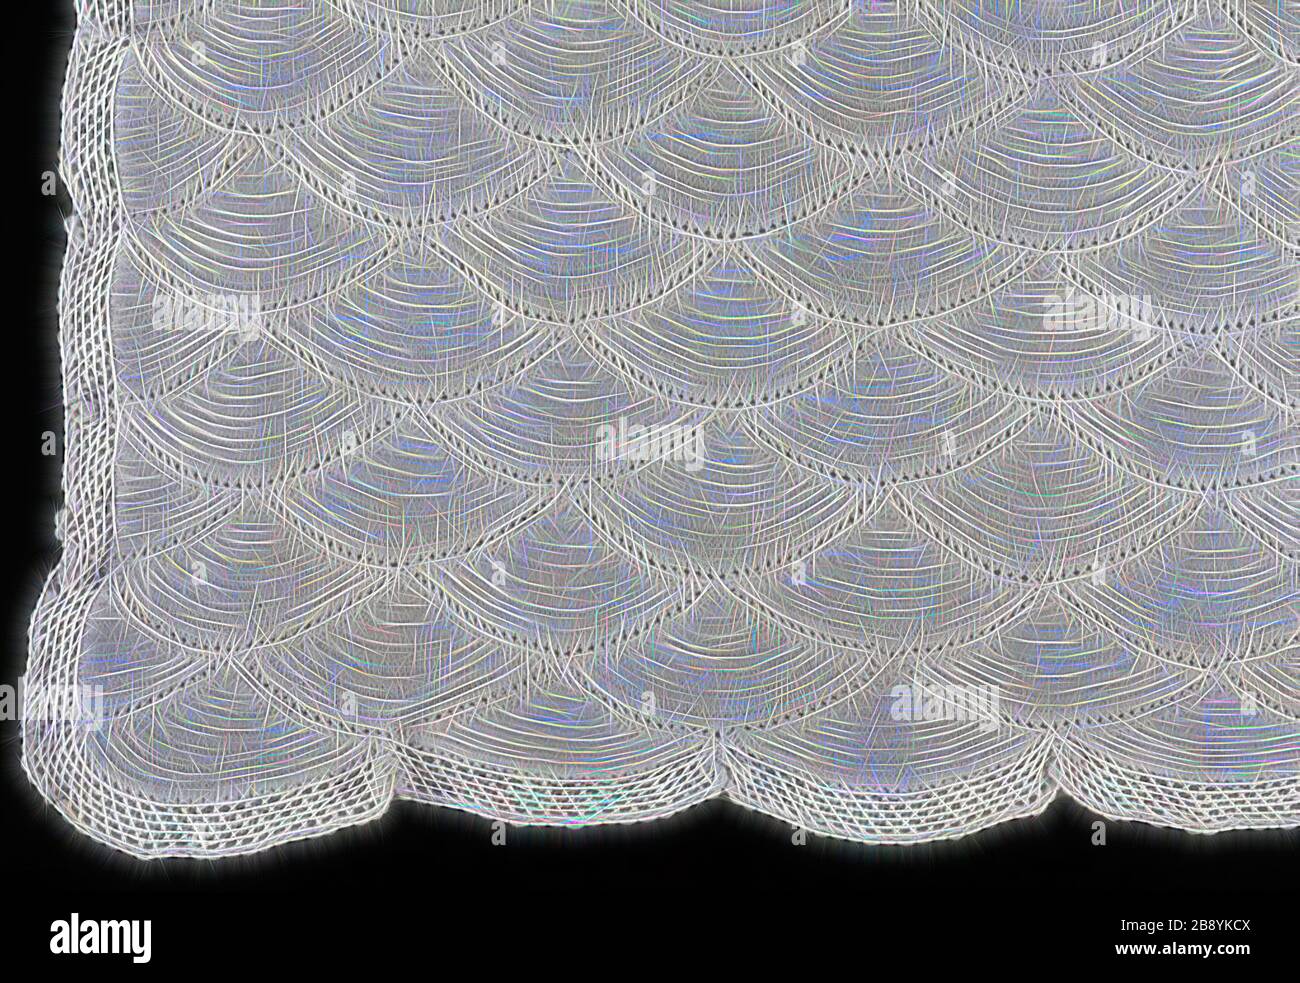 Copriletto, 1850/1900, Germania, cotone, aree di maglia piana unite da  uncinetto piano, bordo uncinetto piano, 172,5 x 201,5 cm (67 7/8 x 79 3/4  in.), Reimagined da Gibon, disegno di calore allegro